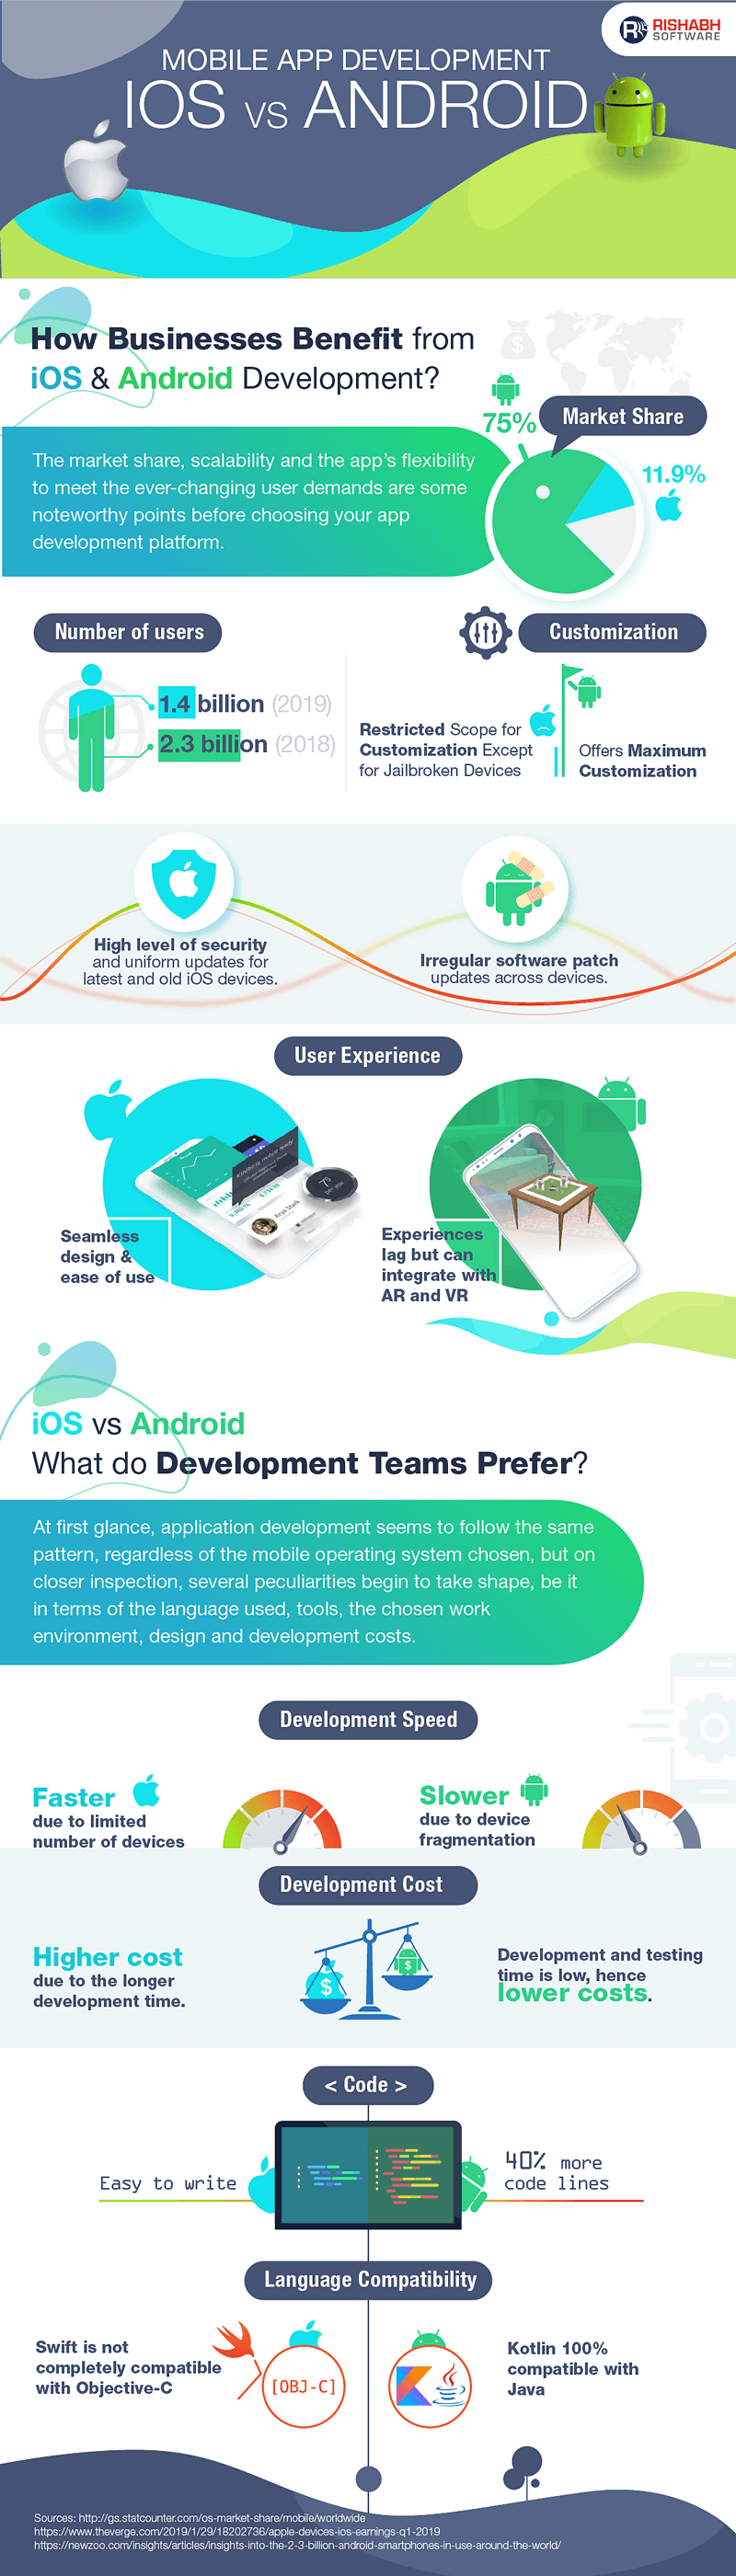 Android-App-Development-vs-iOS-App-Development